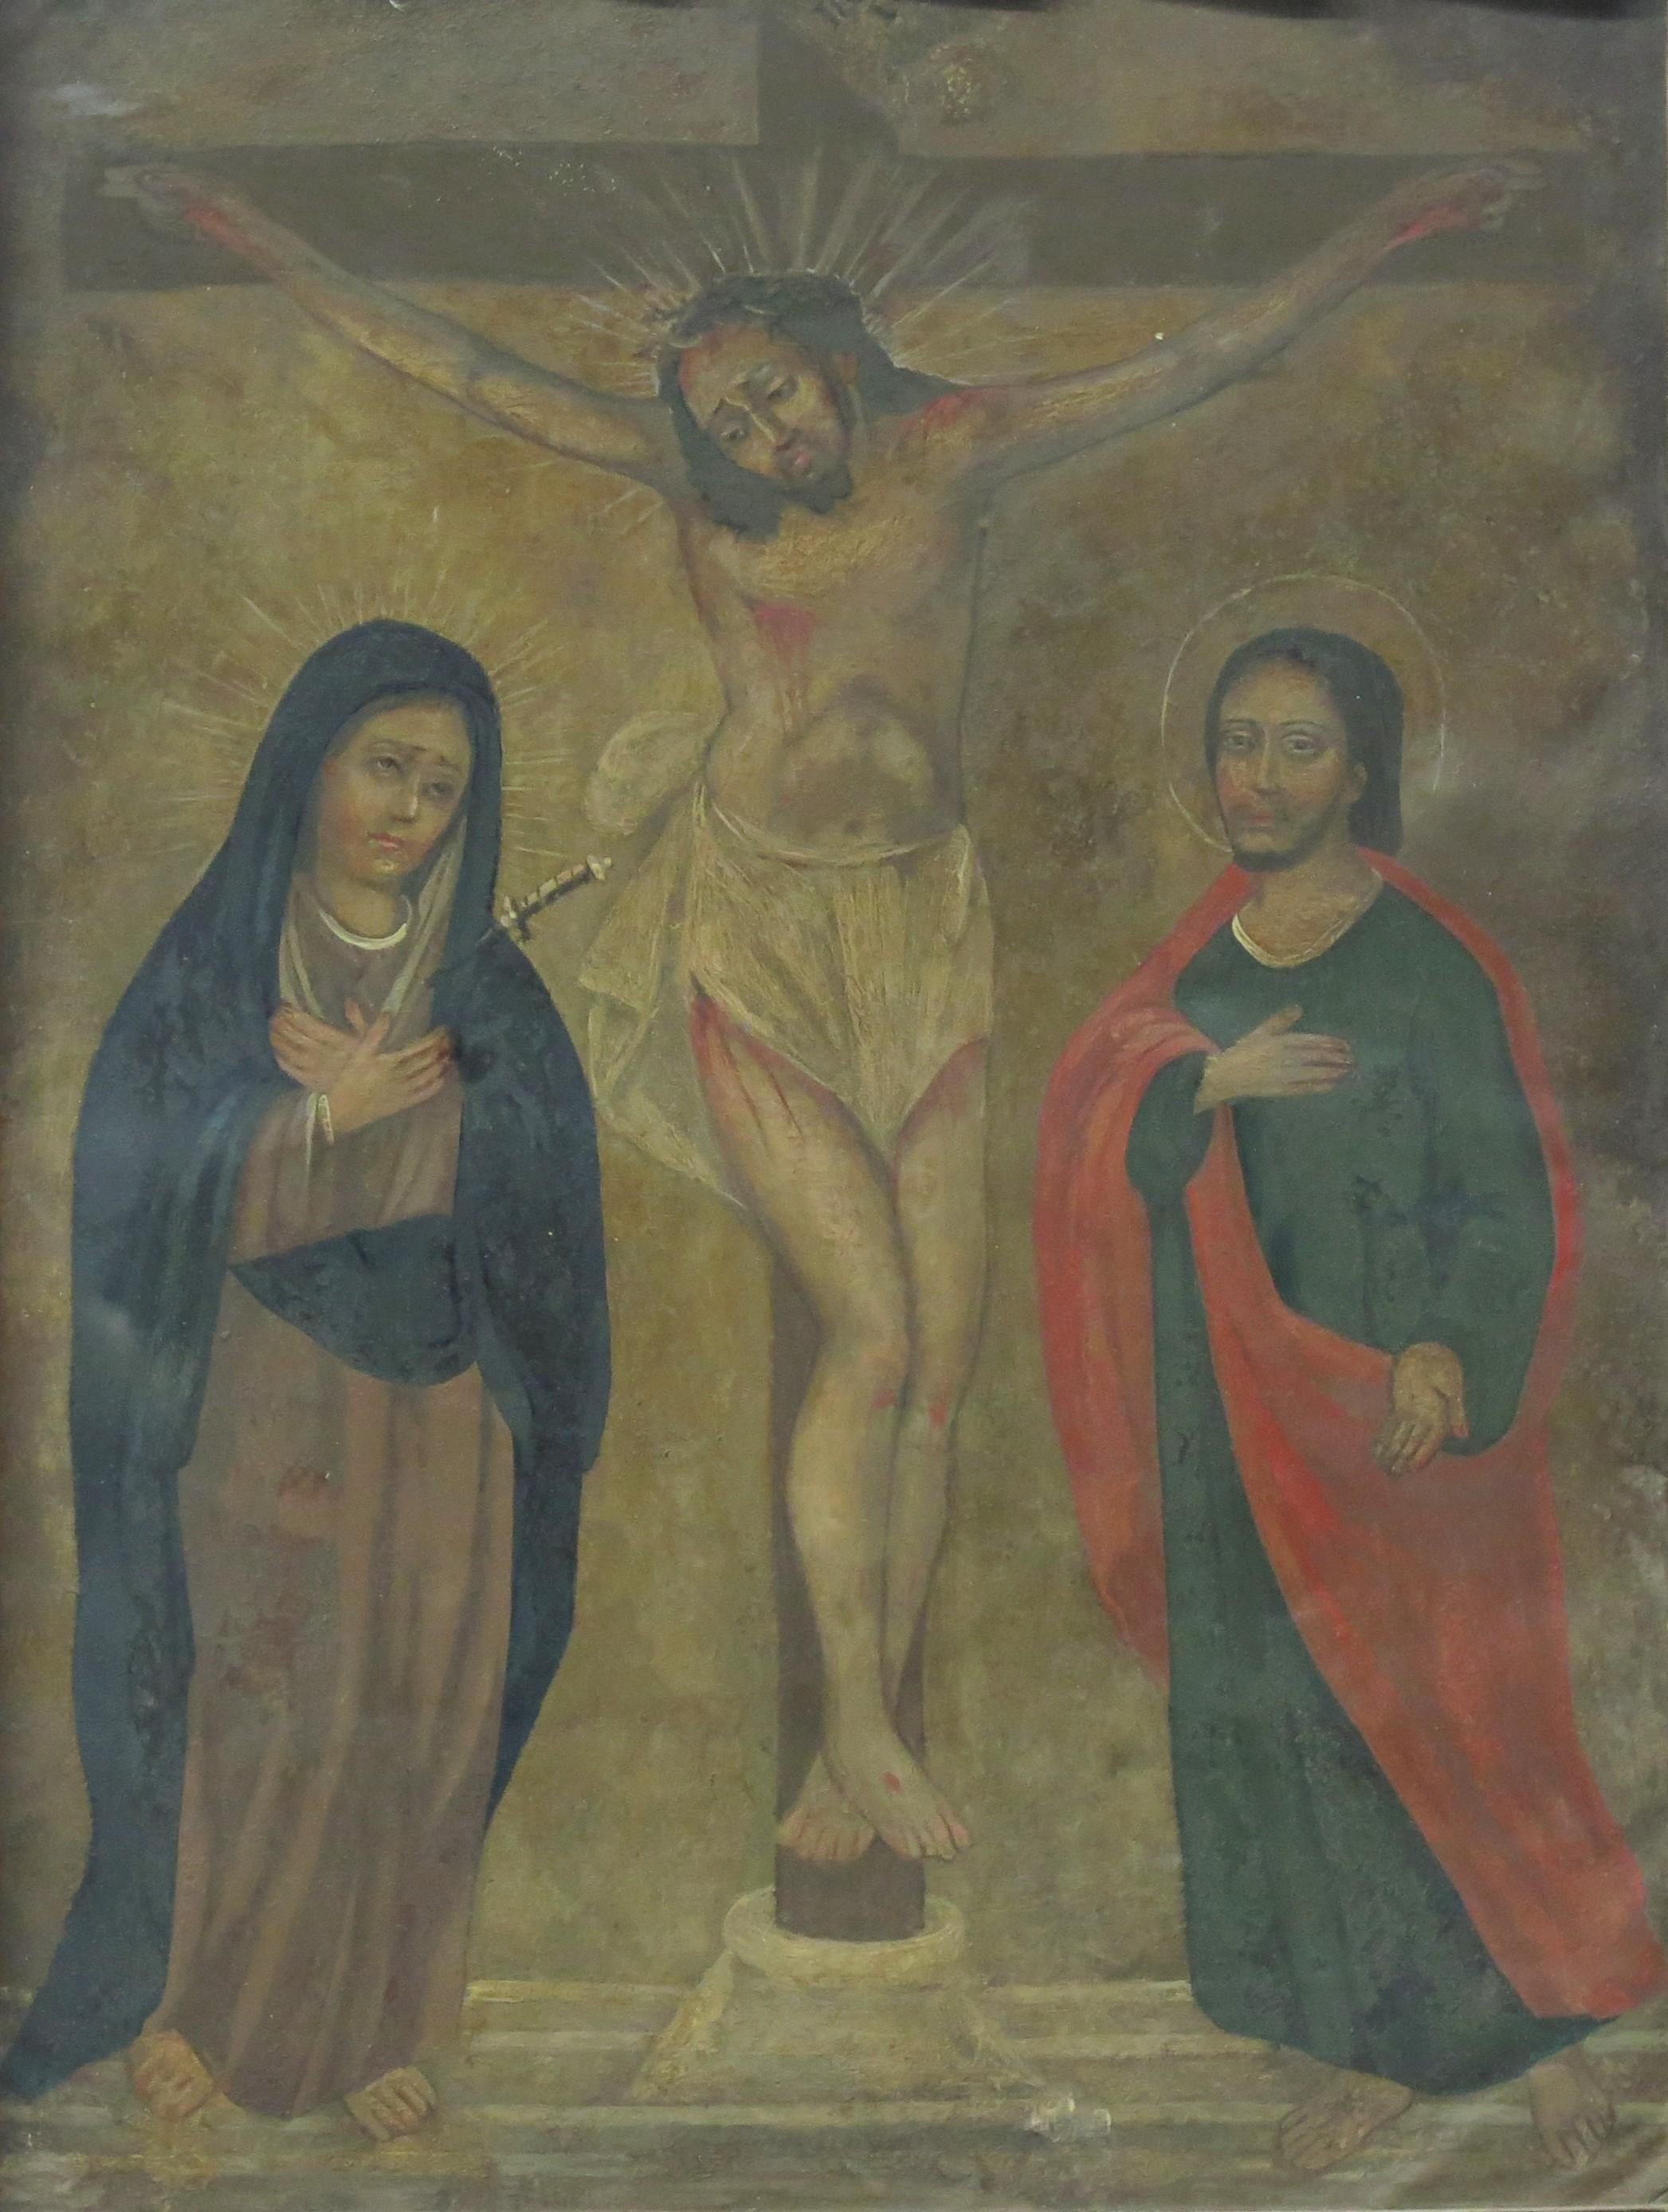 La Crucifixion, huile sur étain retablo colonial espagnol, incluant Marie et Saint John, dans un cadre en bois sculpté, La Crucifixion est un élément central de la Passion du Christ car c'est le moment charnière où Jésus fait le sacrifice ultime